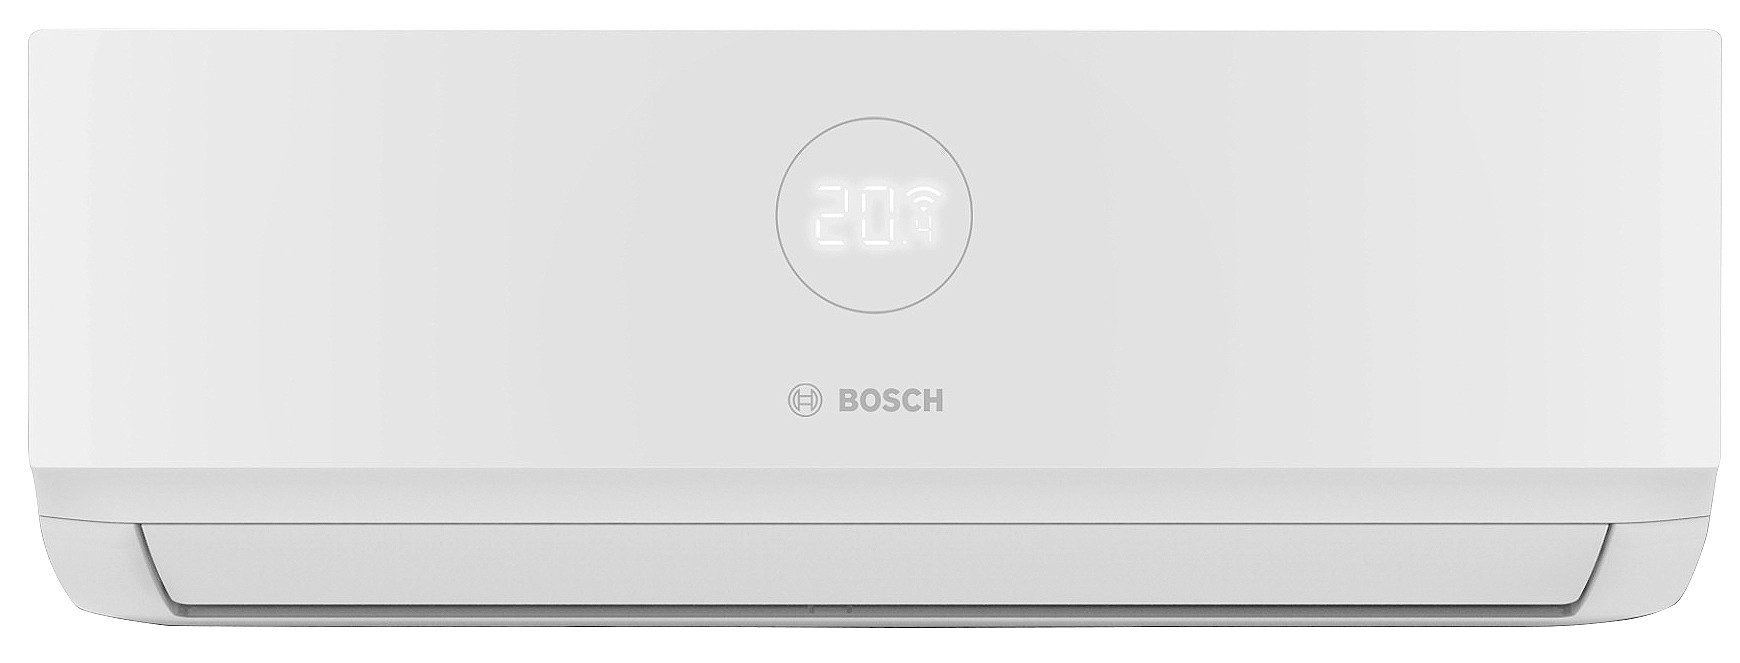 Bosch CL3000iU W 53 E, 5,3 кВт